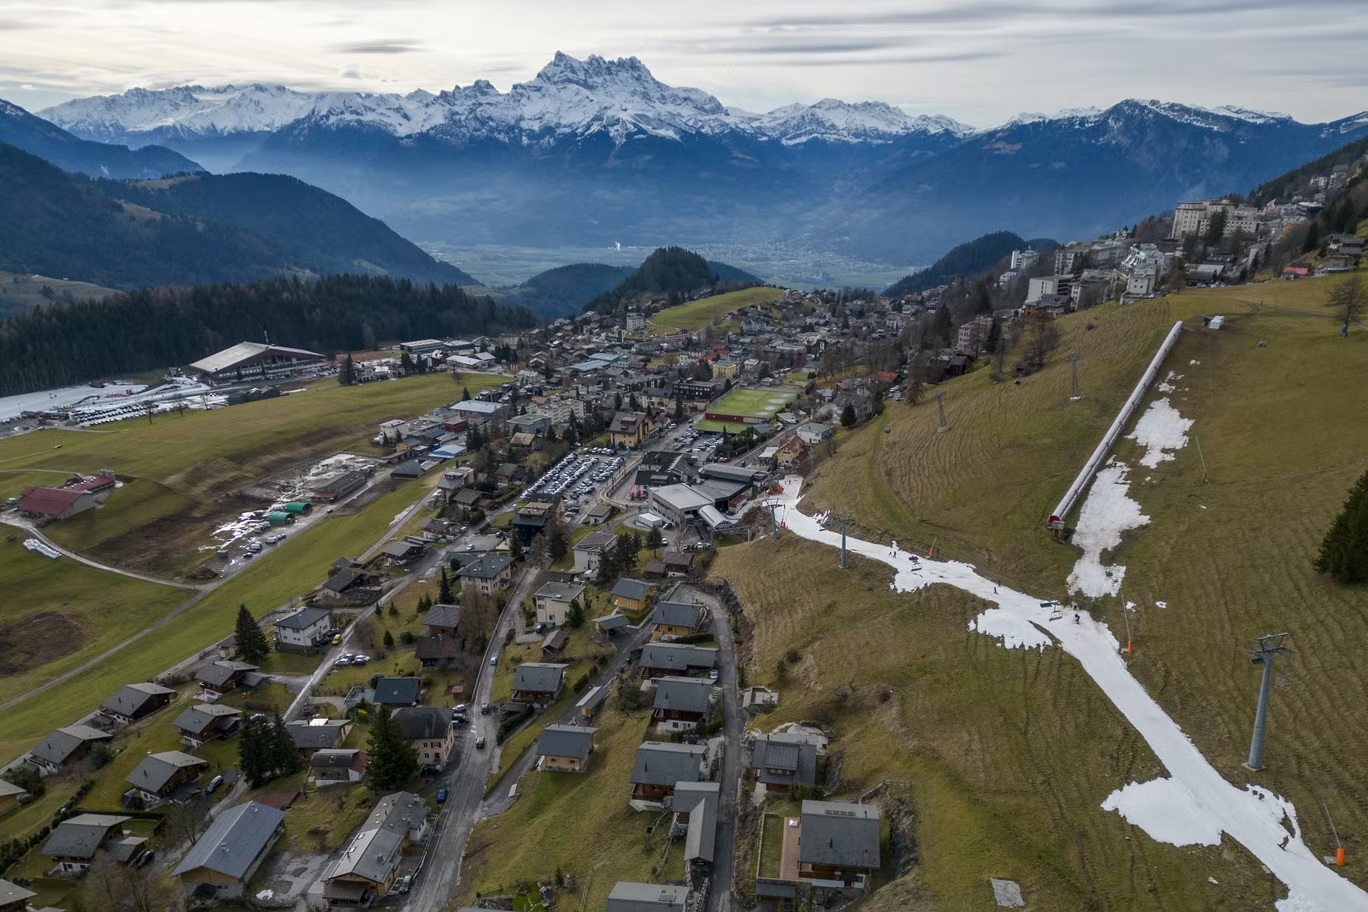 المتزلجون يمرون على طبقة صغيرة من الثلج الاصطناعي وسط درجات حرارة شتاء أكثر دفئاً من المعتاد في جبال الألب في ليسين، سويسرا في 4 يناير (رويترز)